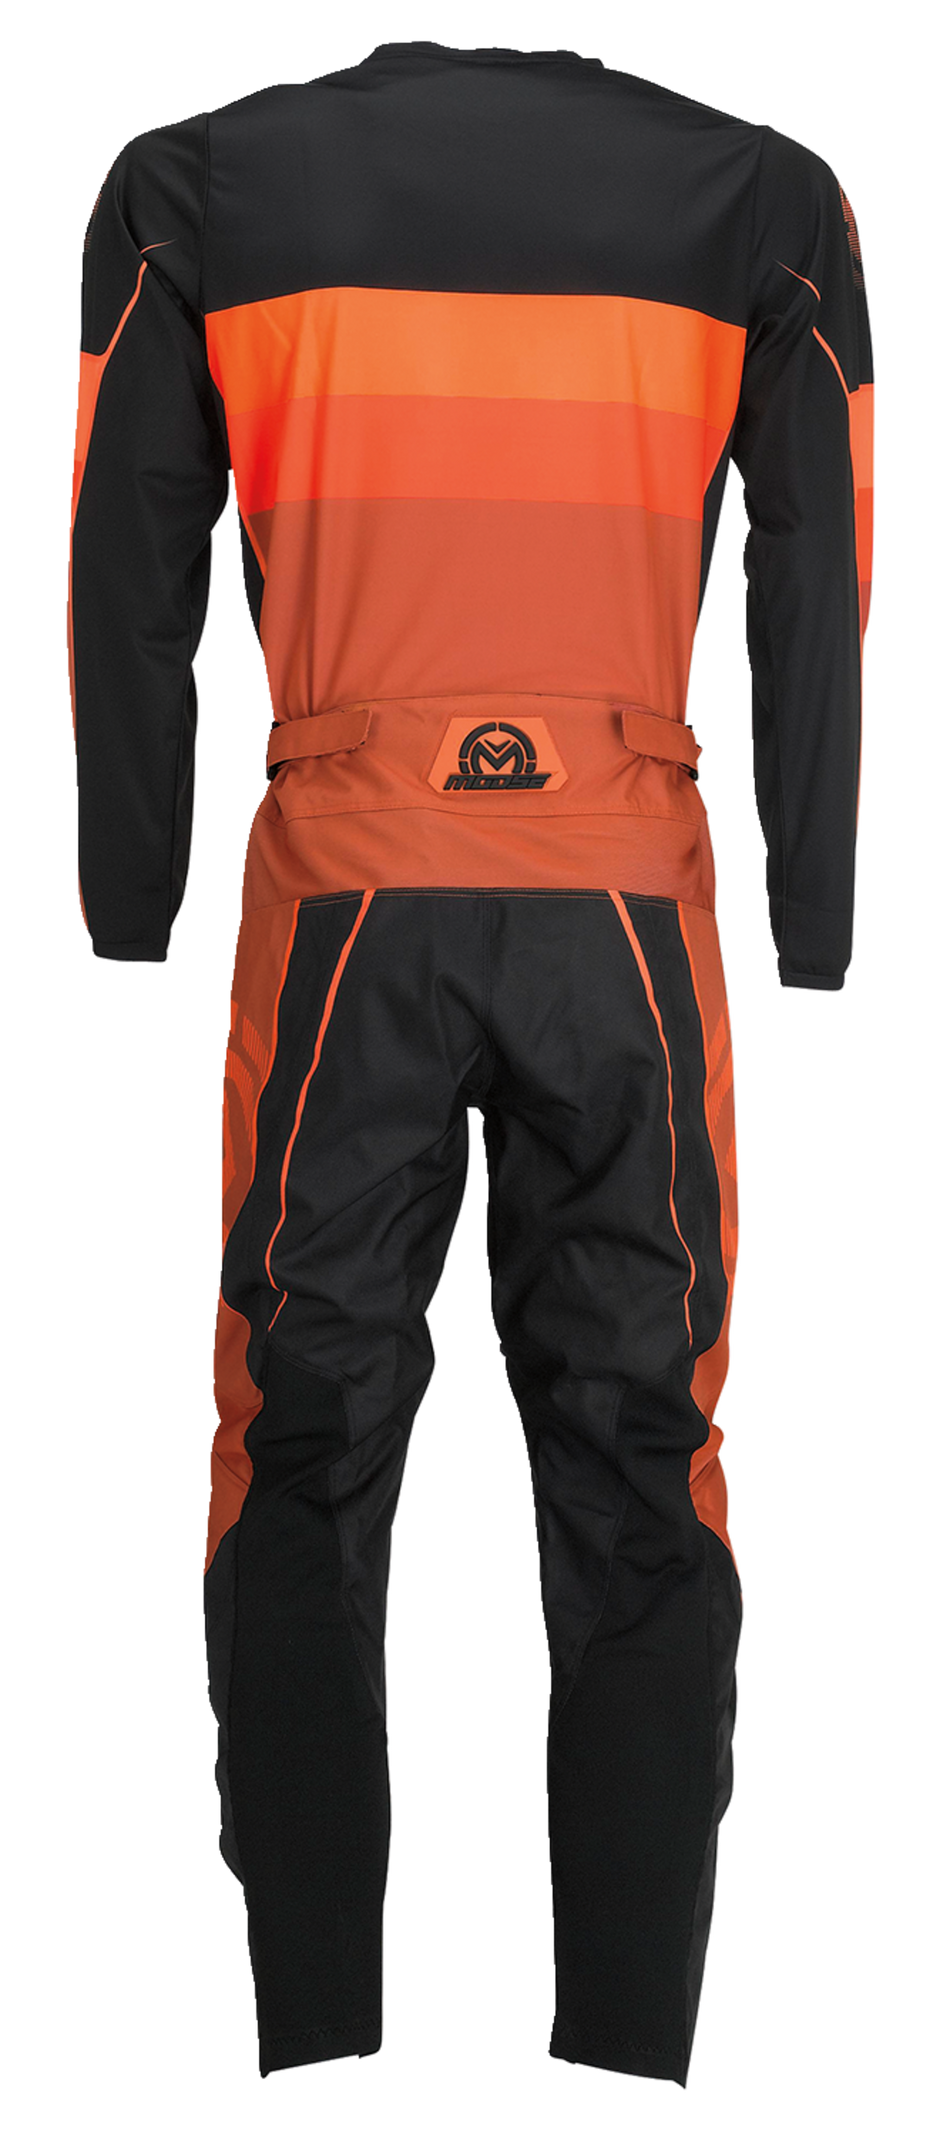 Camiseta MOOSE RACING Qualifier® - Naranja/Gris - Pequeña 2910-7196 